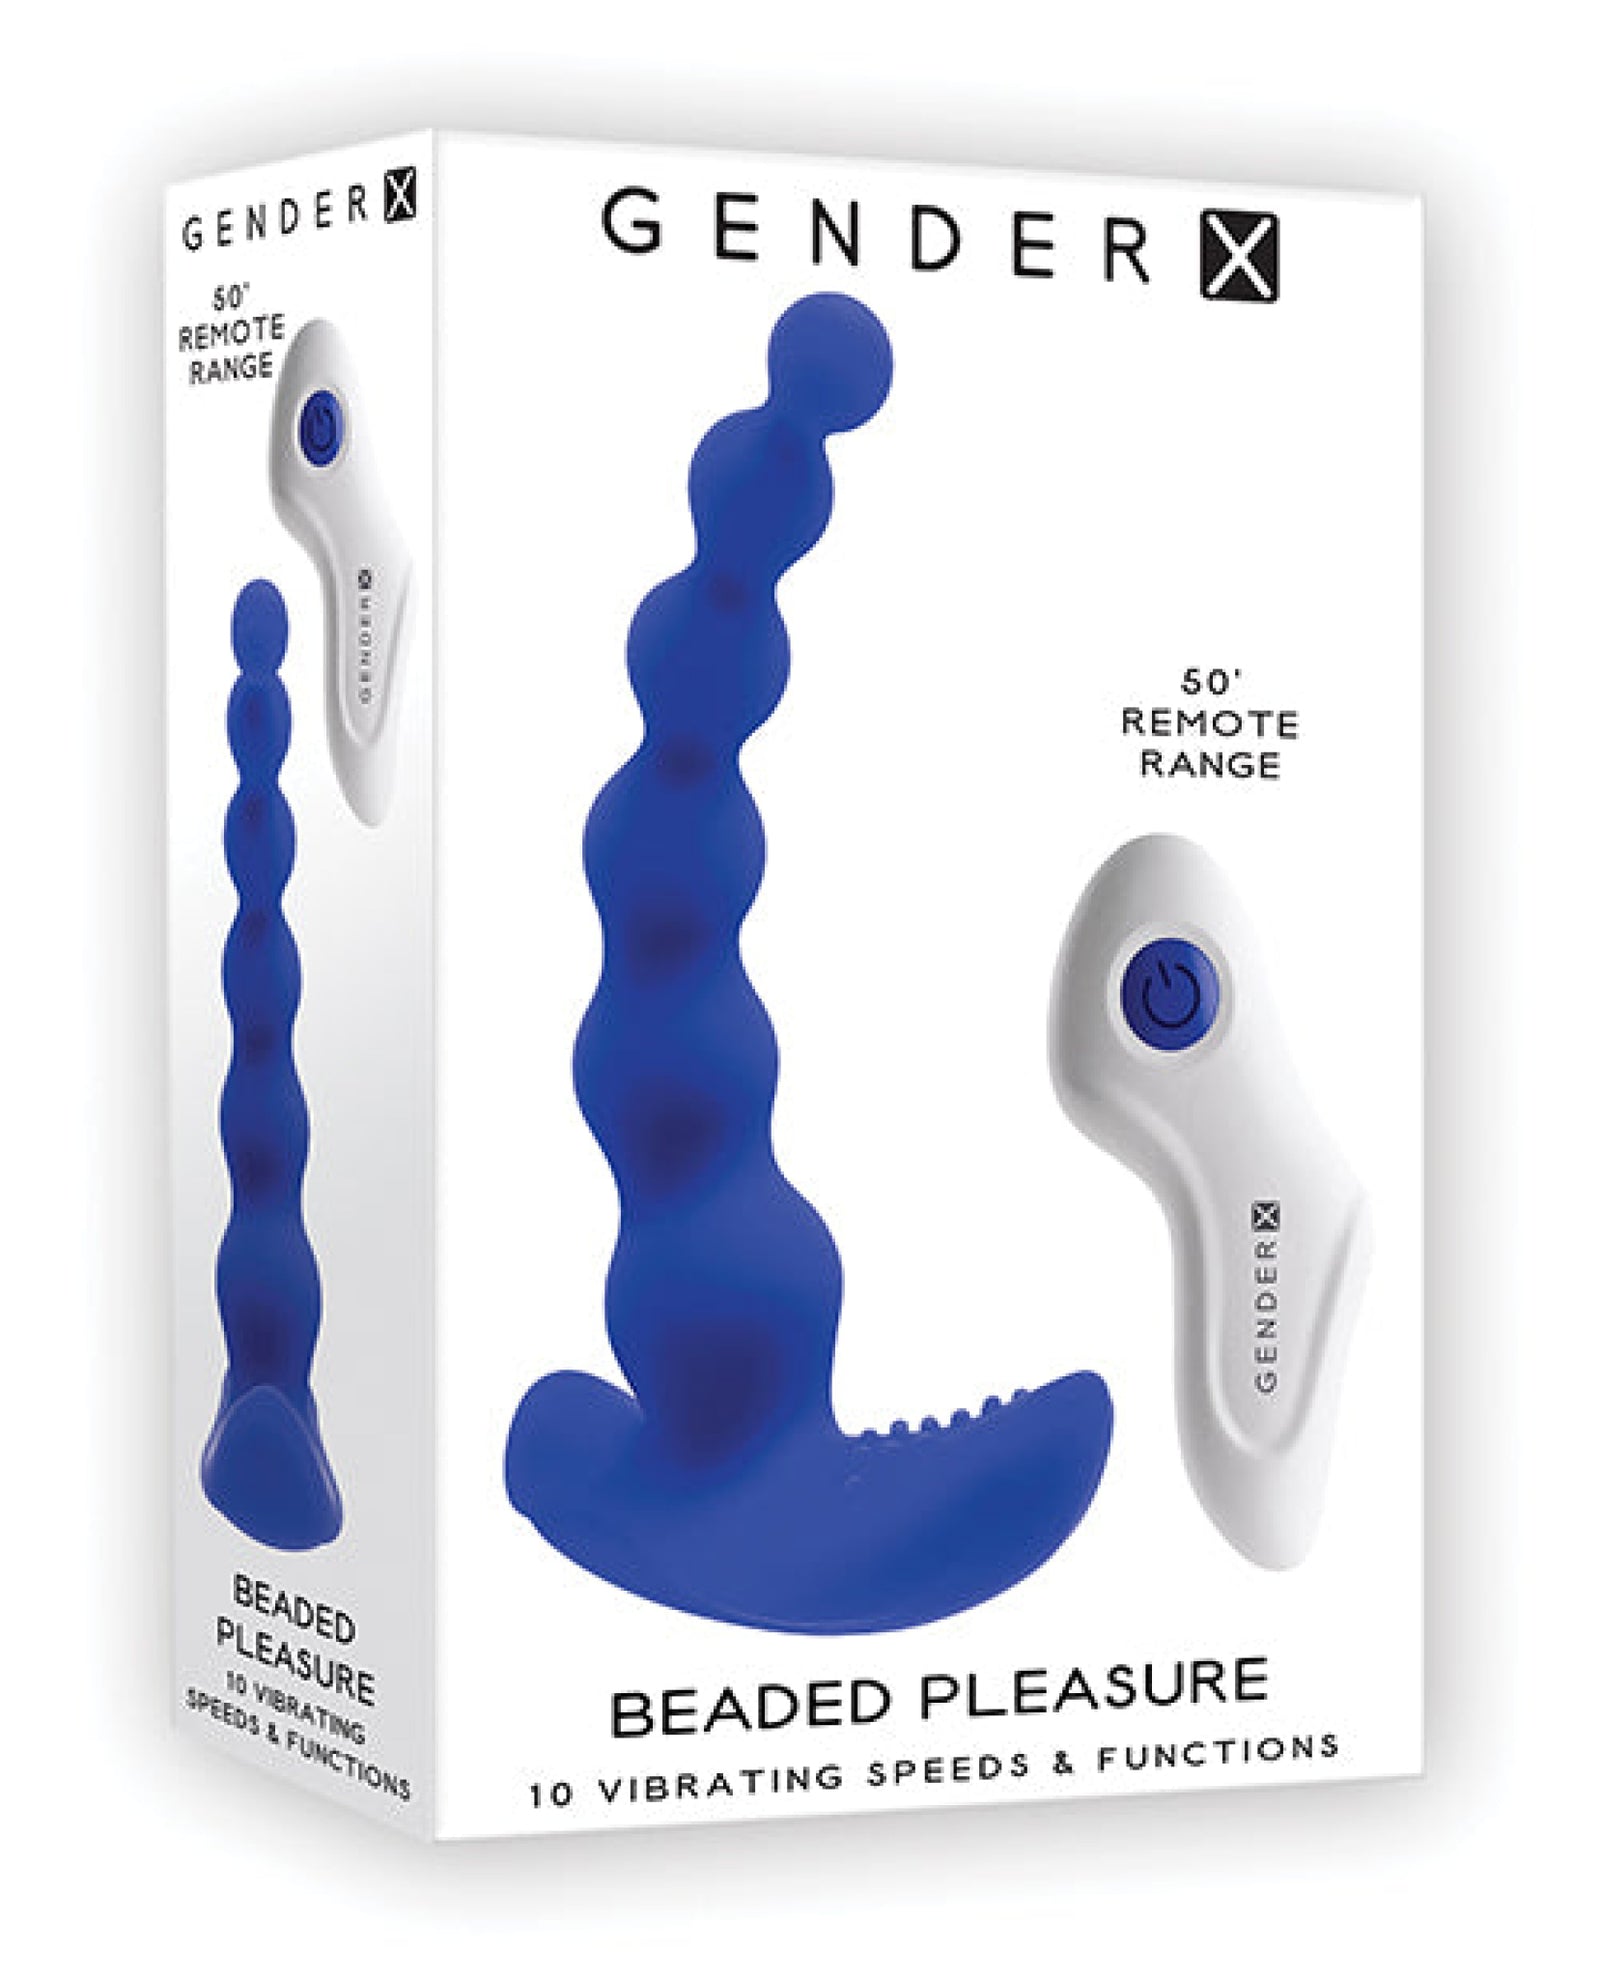 Gender X Beaded Pleasure - Blue Gender X